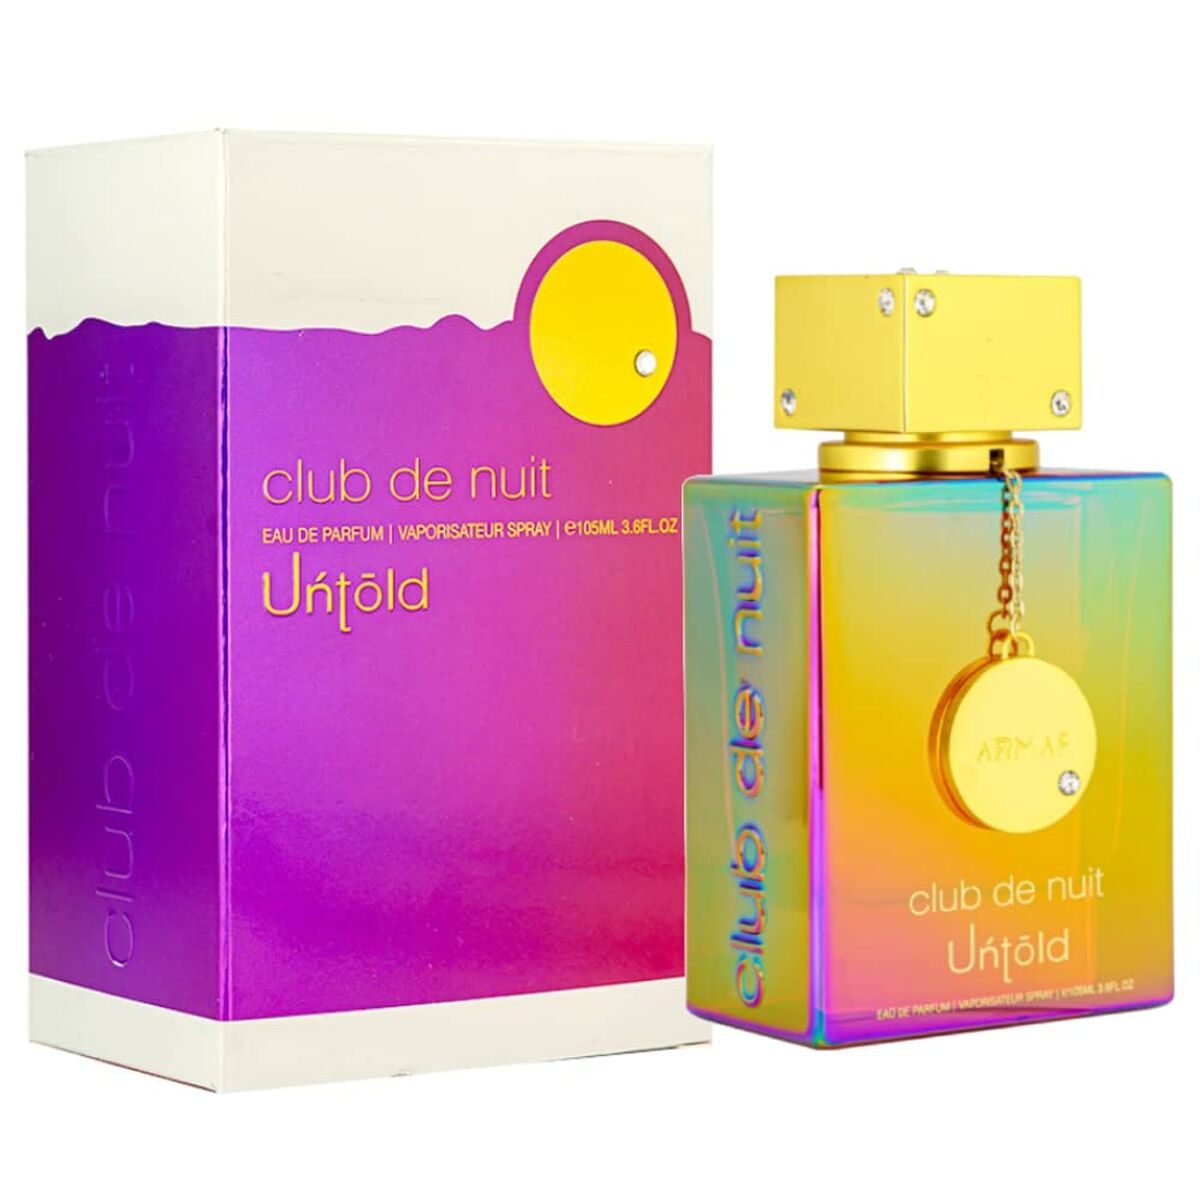 Perfume Unisex Armaf EDP Club de Nuit Untold 105 ml